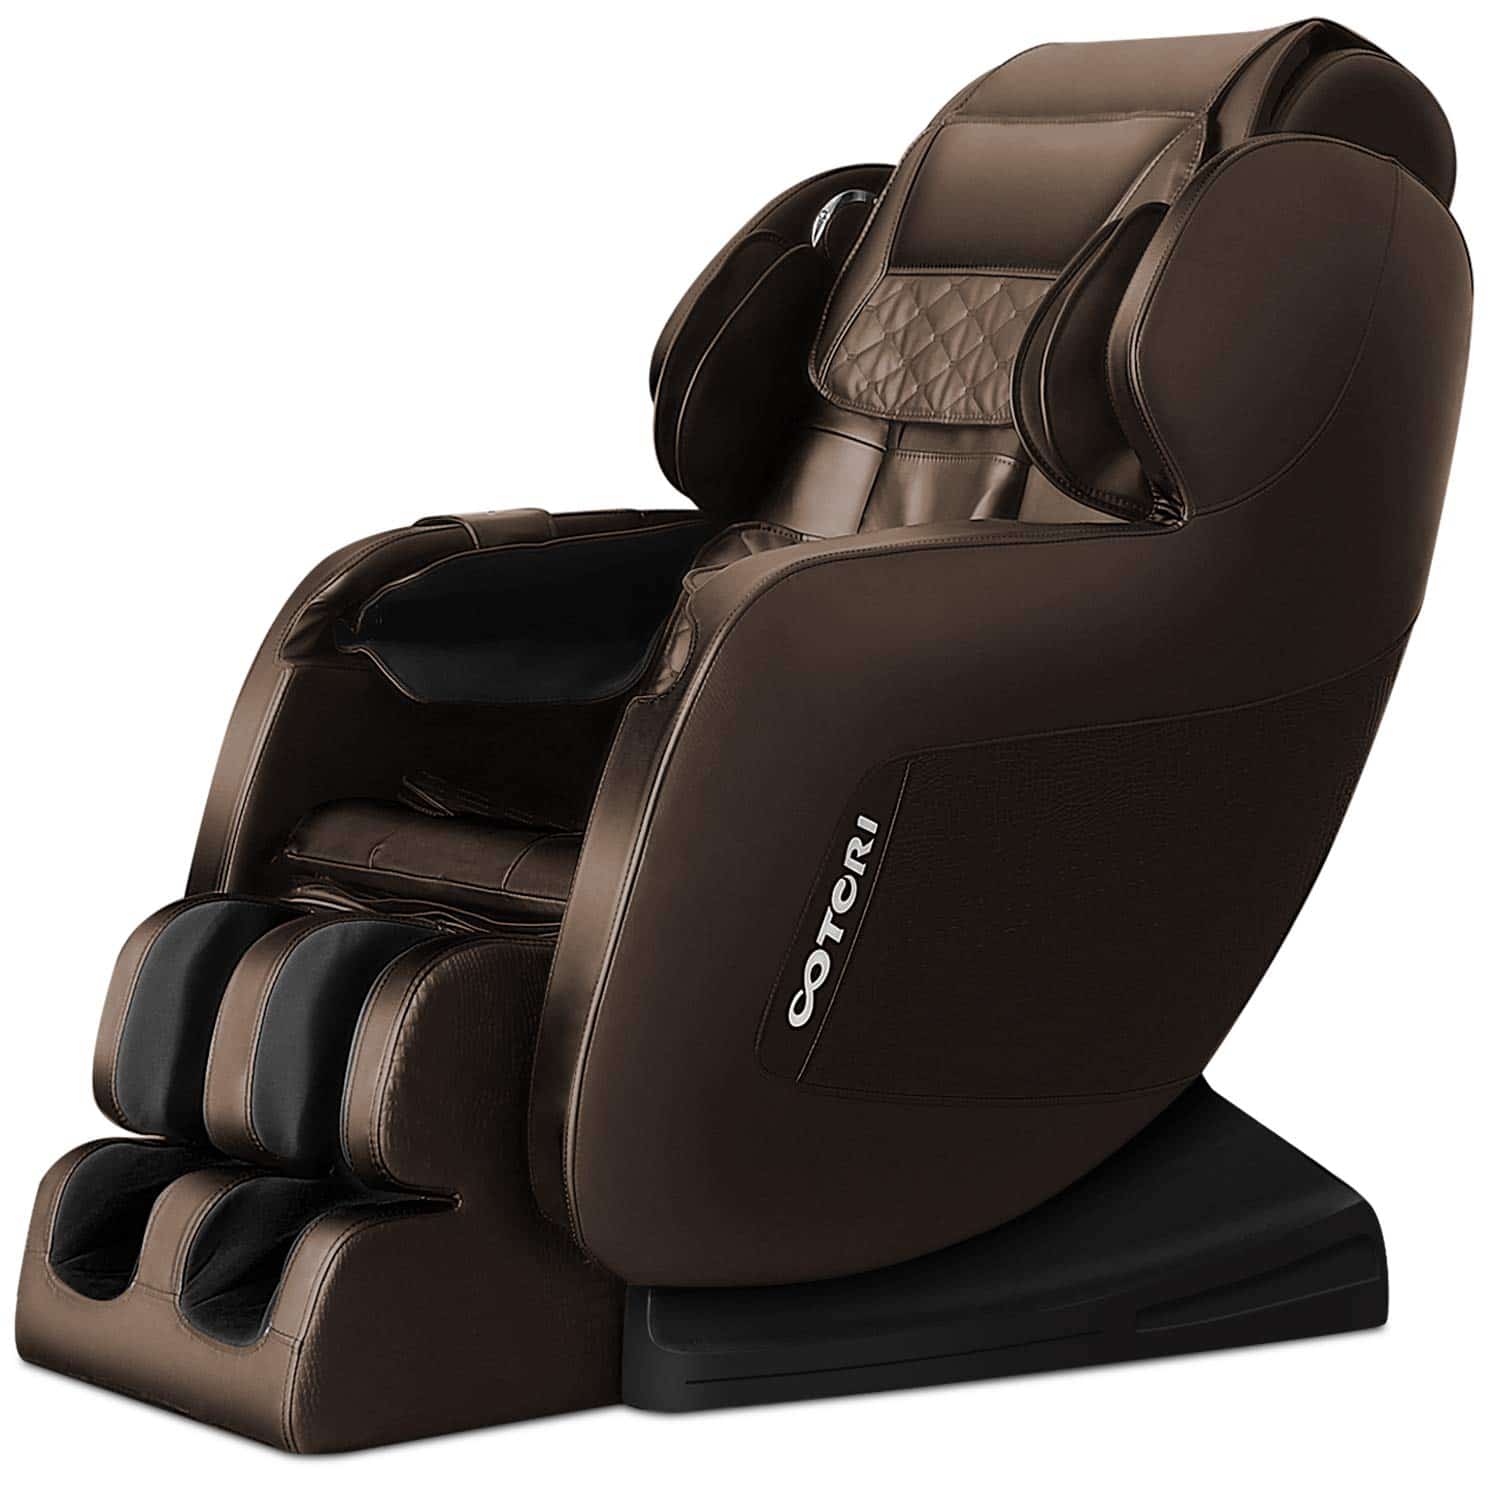 Sinoluck 3D Robot Hand Massage Chair